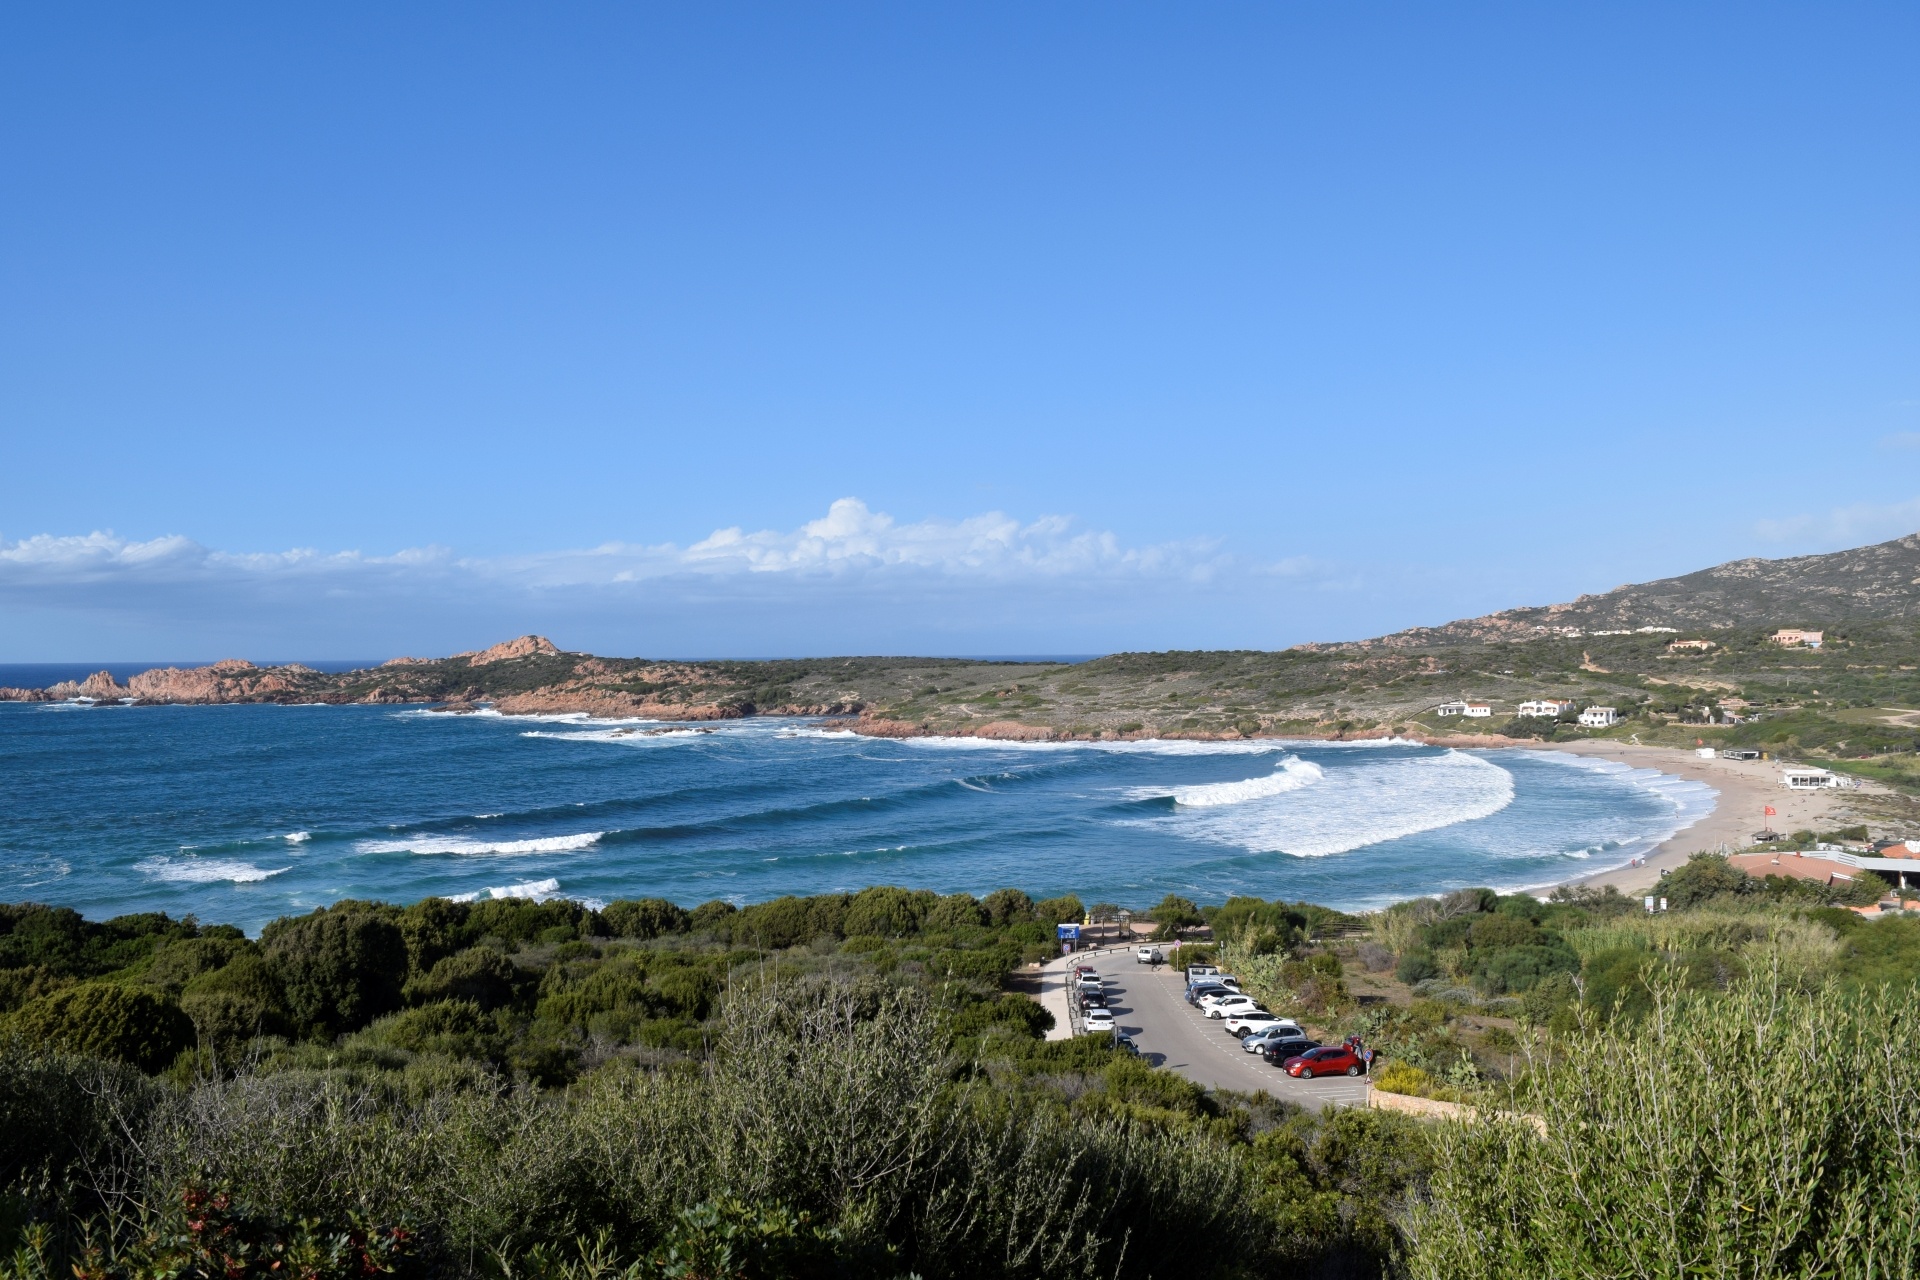 Legitimate surfing destination, Sardinian waves, Surfing in Sardinia, Waves of adventure, 1920x1280 HD Desktop